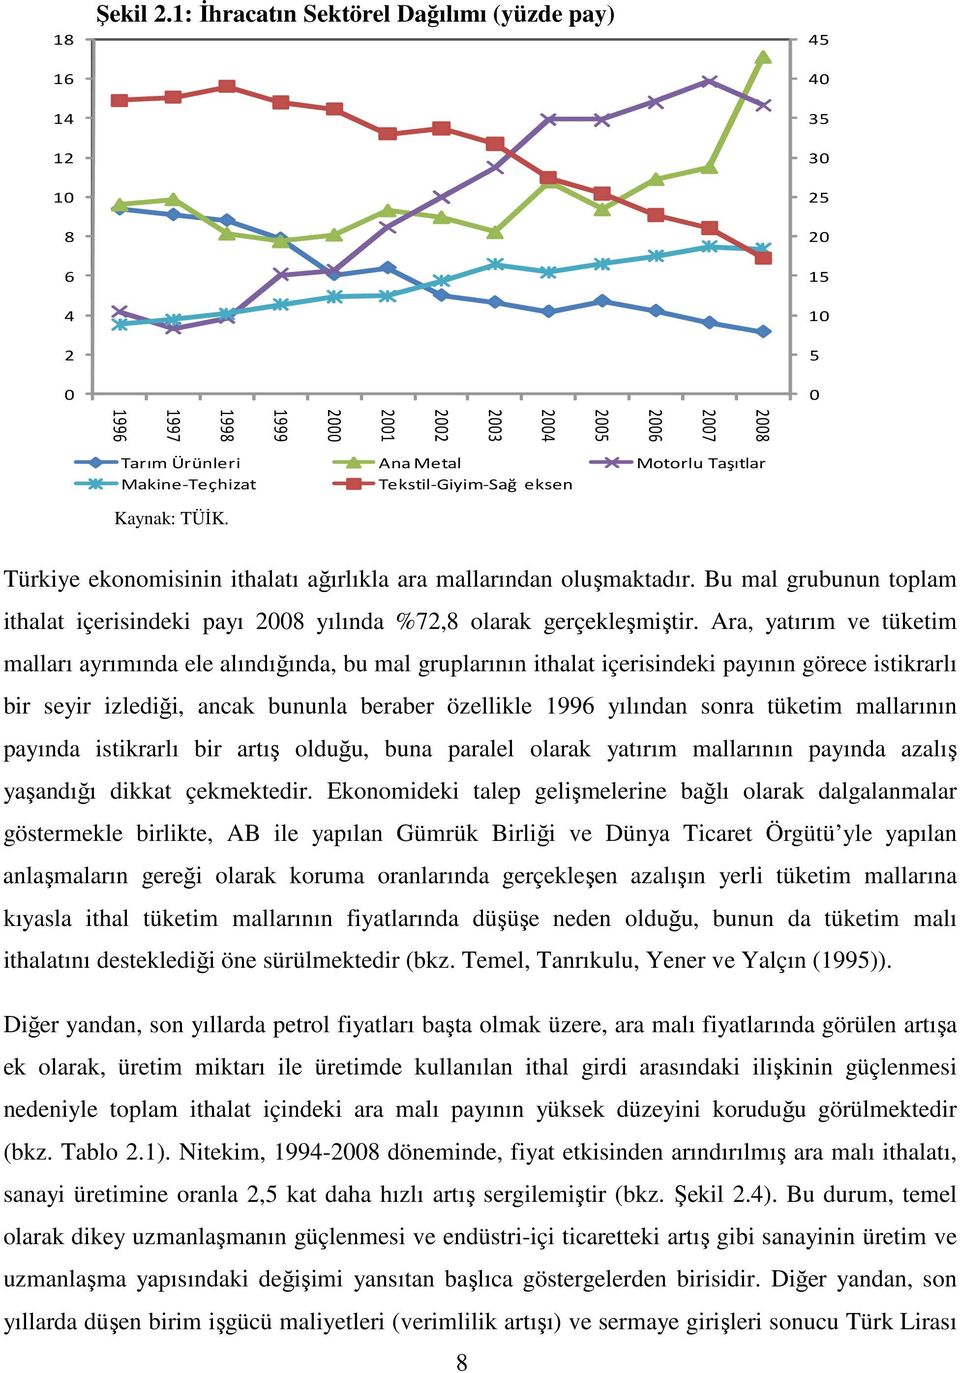 Tekstil-Giyim-Sağ eksen Kaynak: TÜĐK. Türkiye ekonomisinin ithalatı ağırlıkla ara mallarından oluşmaktadır. Bu mal grubunun toplam ithalat içerisindeki payı 2008 yılında %72,8 olarak gerçekleşmiştir.